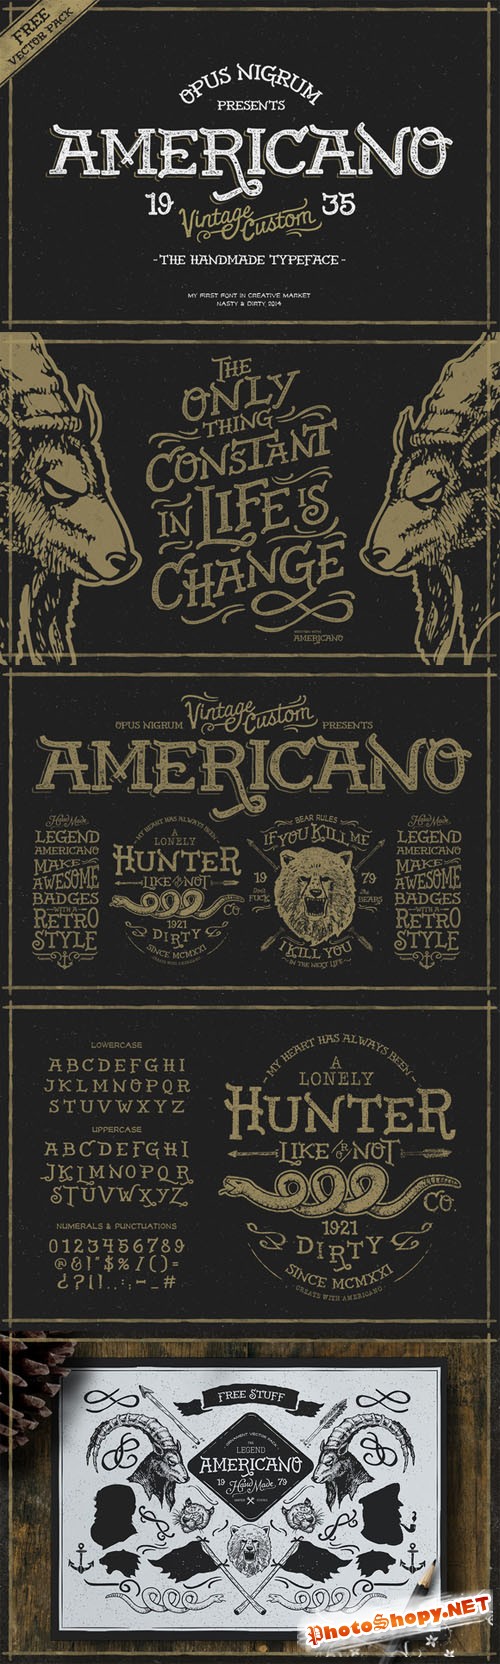 Americano Font Family - Creativemarket 78179